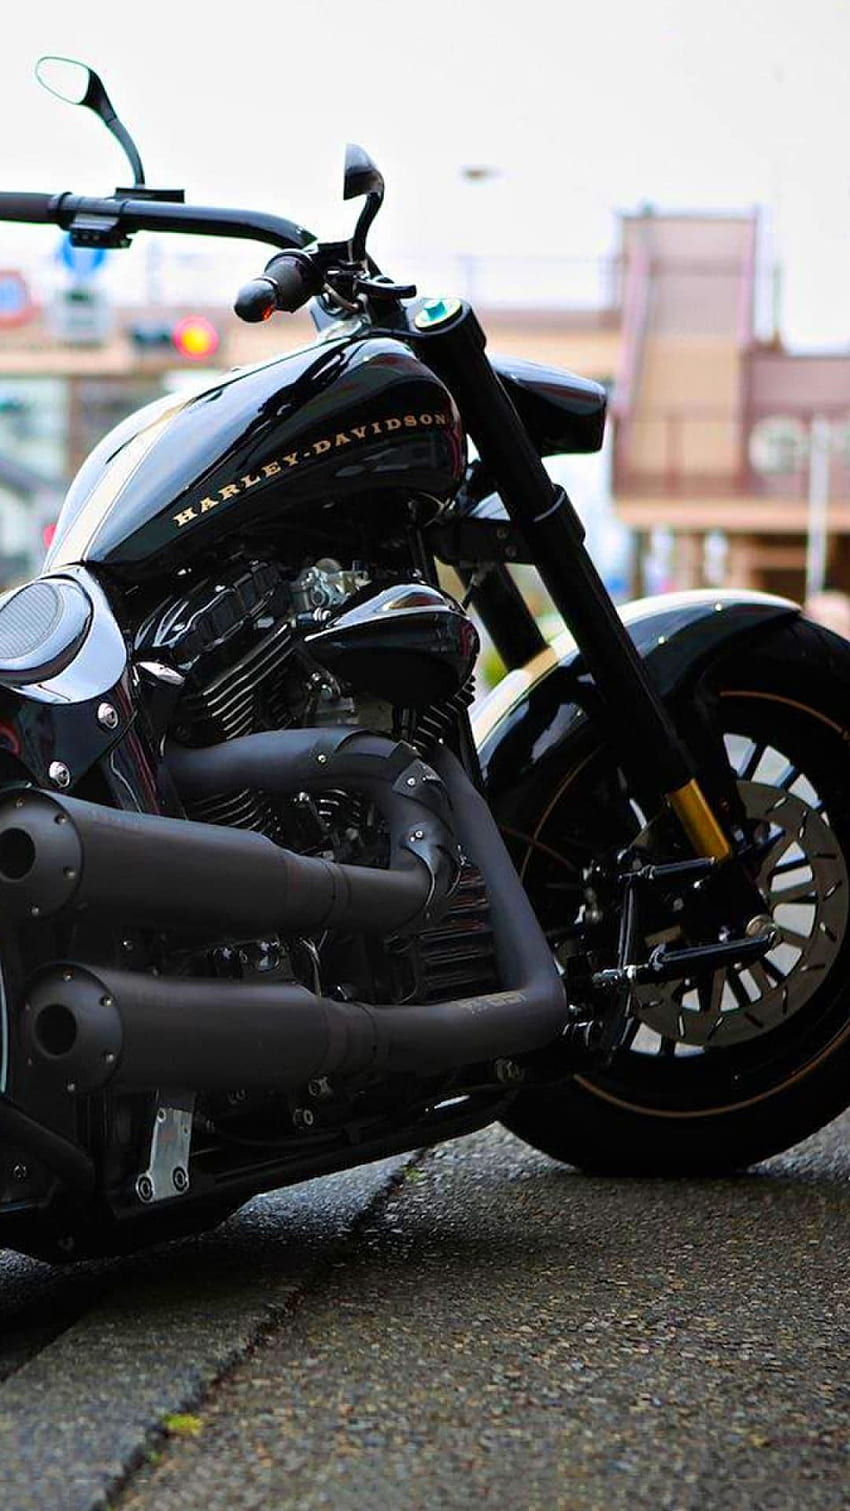 Harley Davidson Bike für Android Mobile, Harley Davidson Motorrad HD-Handy-Hintergrundbild